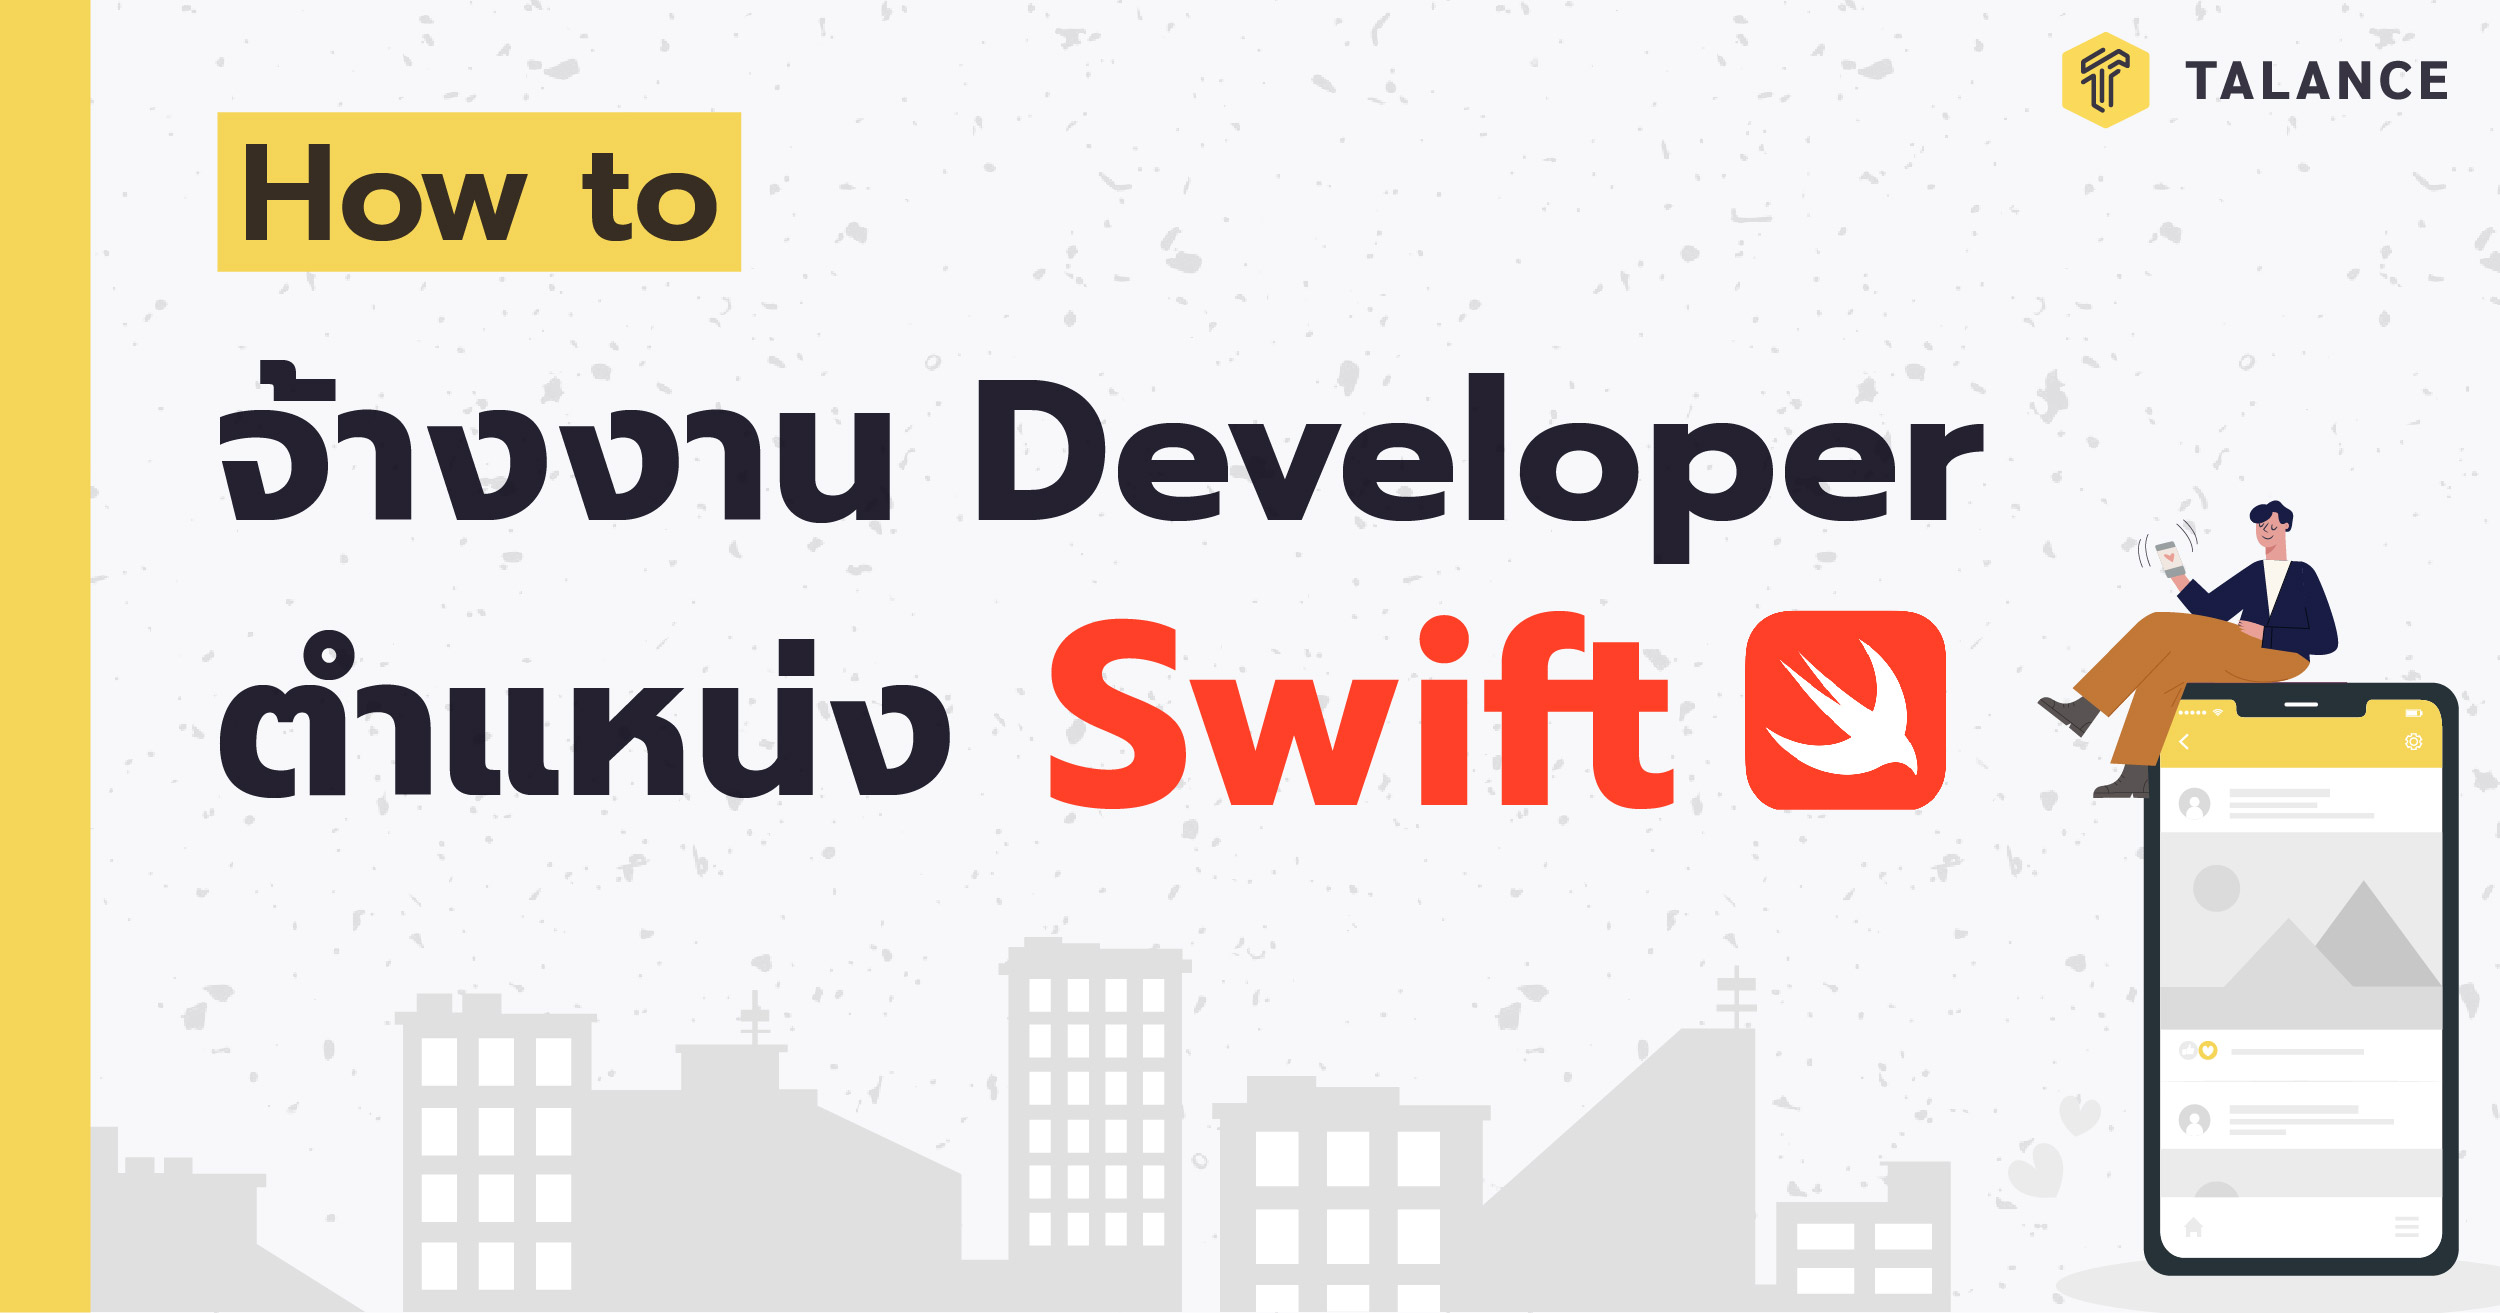 Swift Developer